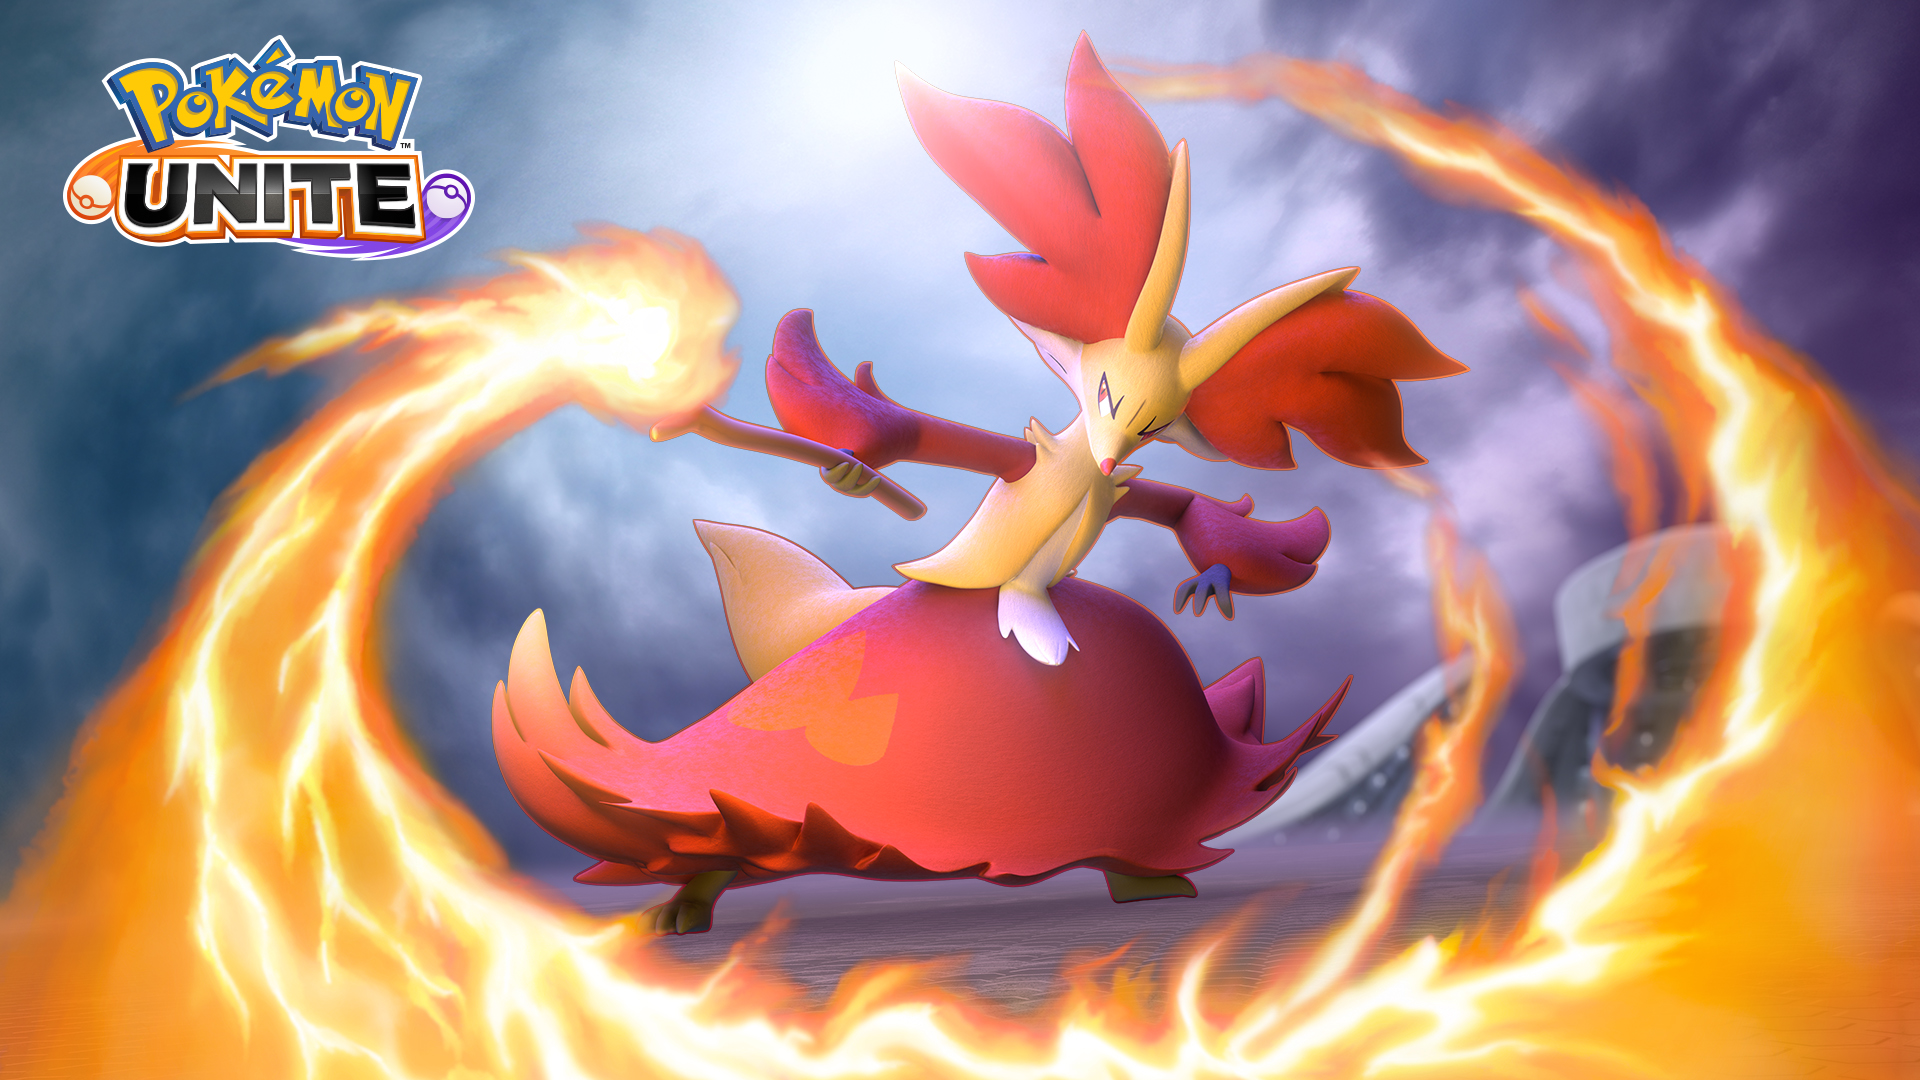 Delphox unleashes a wave of fire in its Pokemon Unite key art.